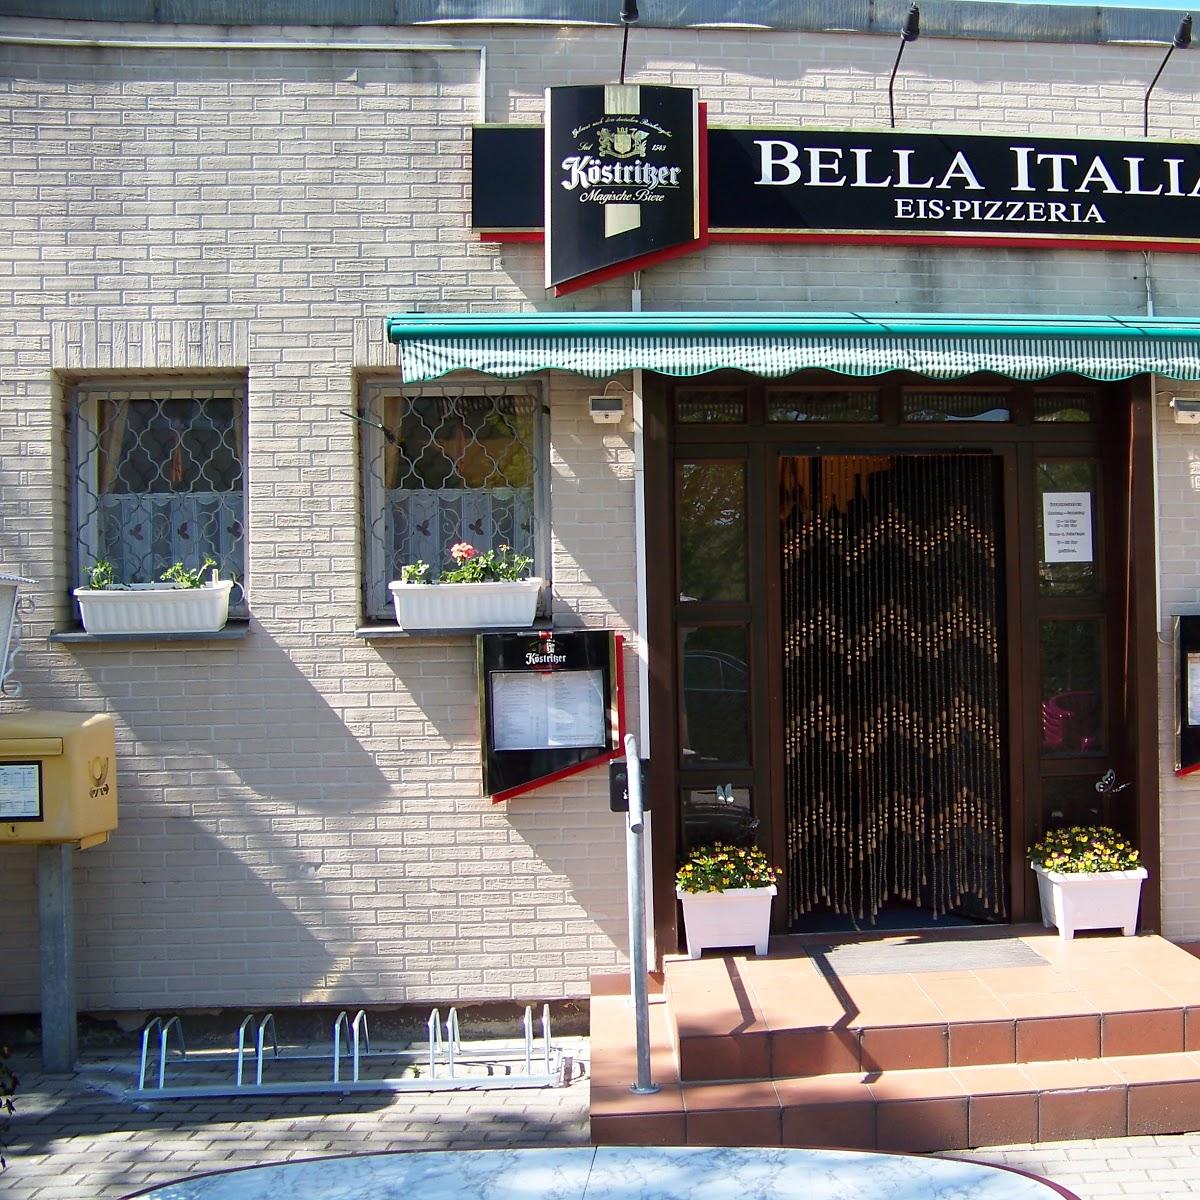 Restaurant "Pizzeria Bella Italia" in Meerane